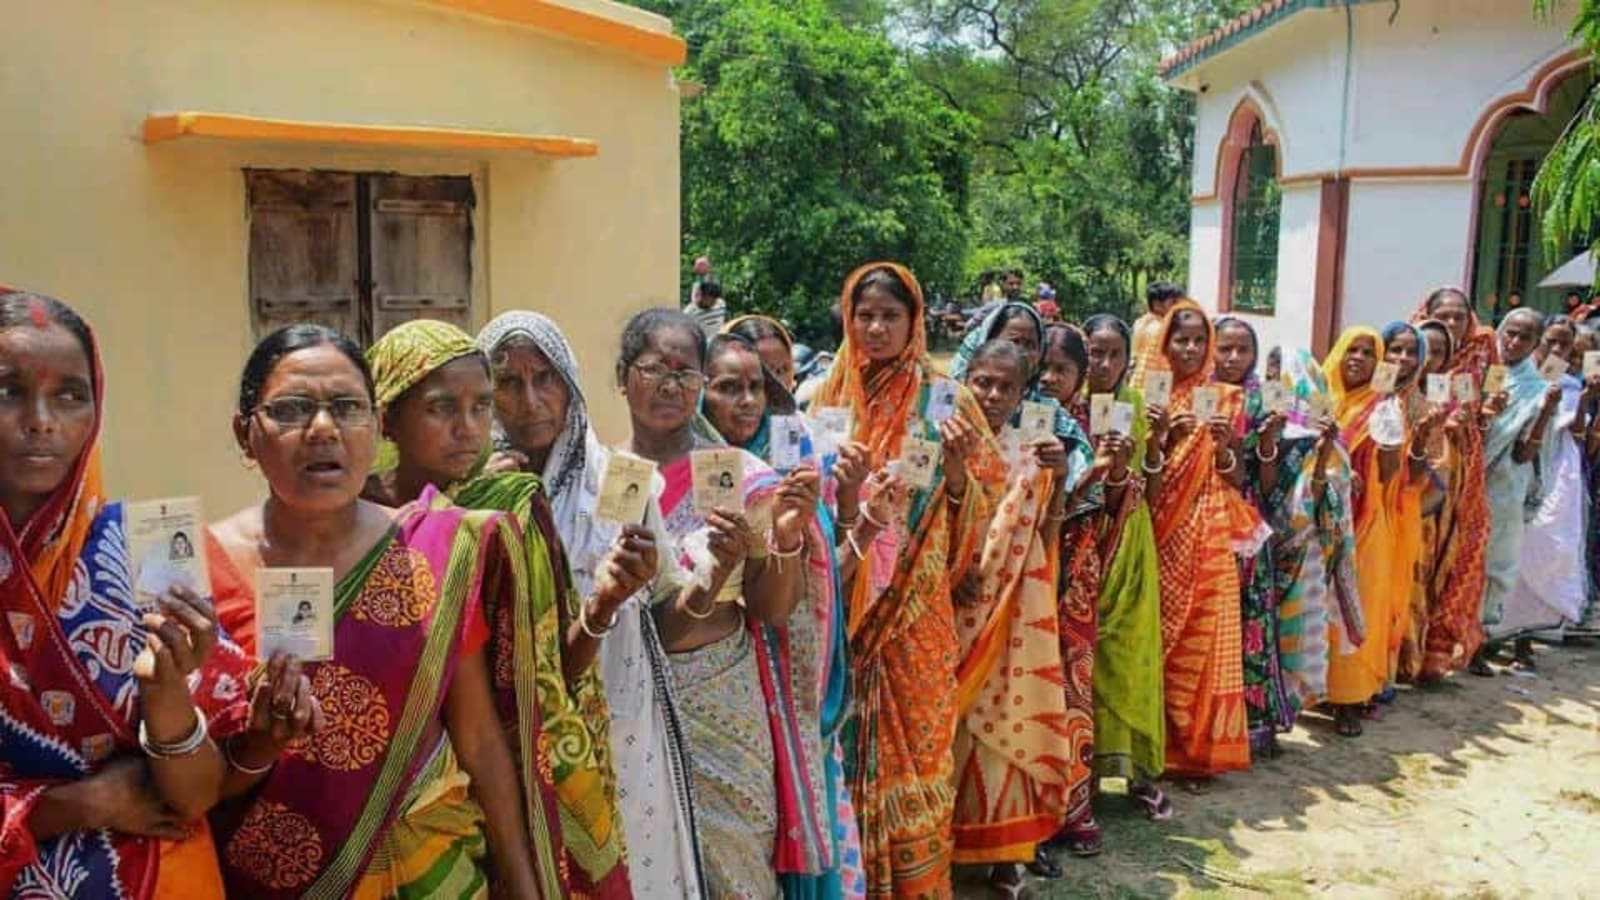 Gram sabha - A rise of rural India